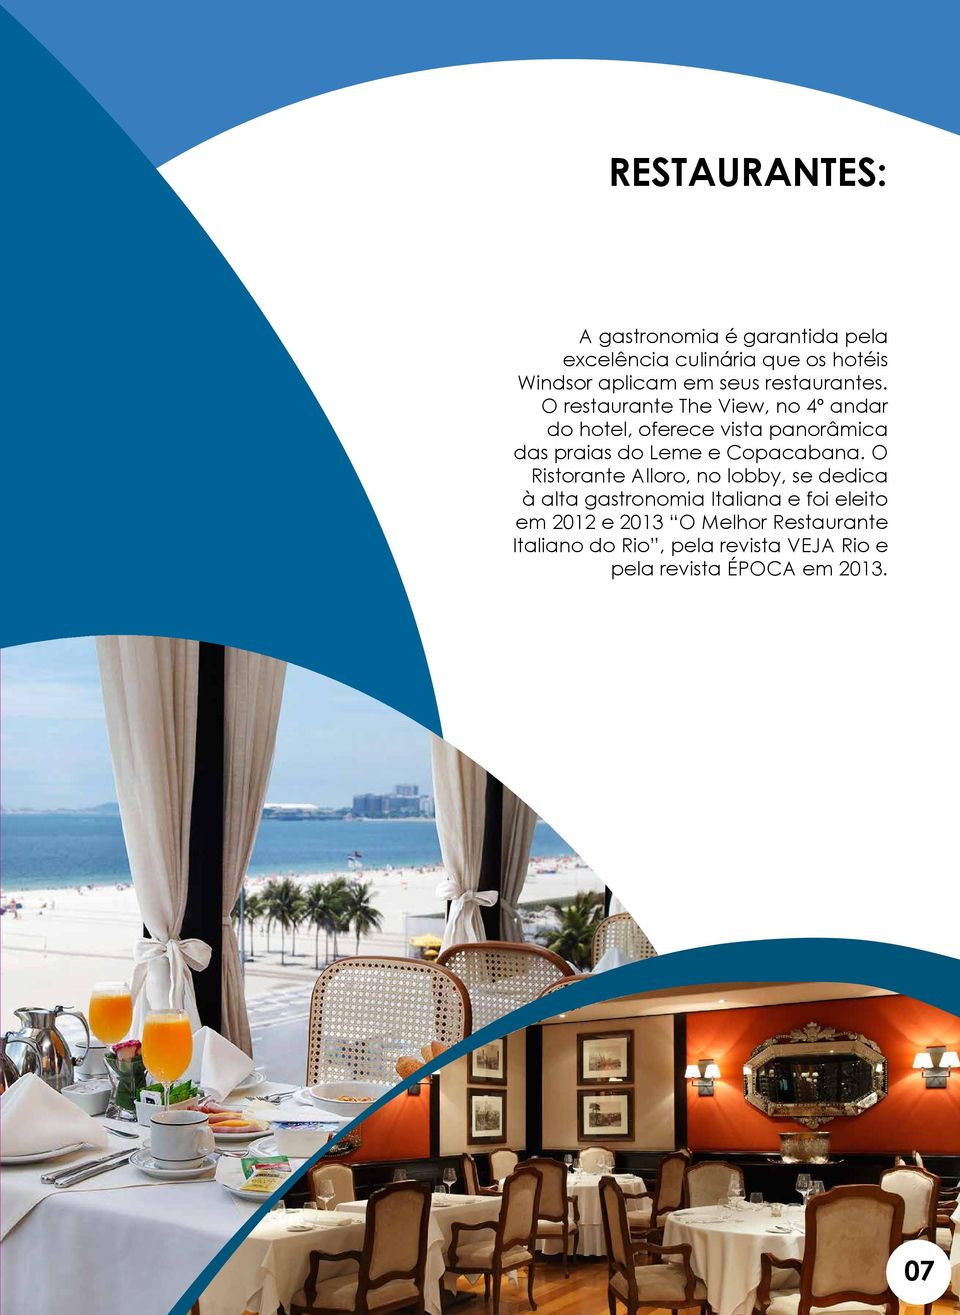 O restaurante The View, no 4º andar do hotel, oferece vista panorâmica das praias do Leme e Copacabana.